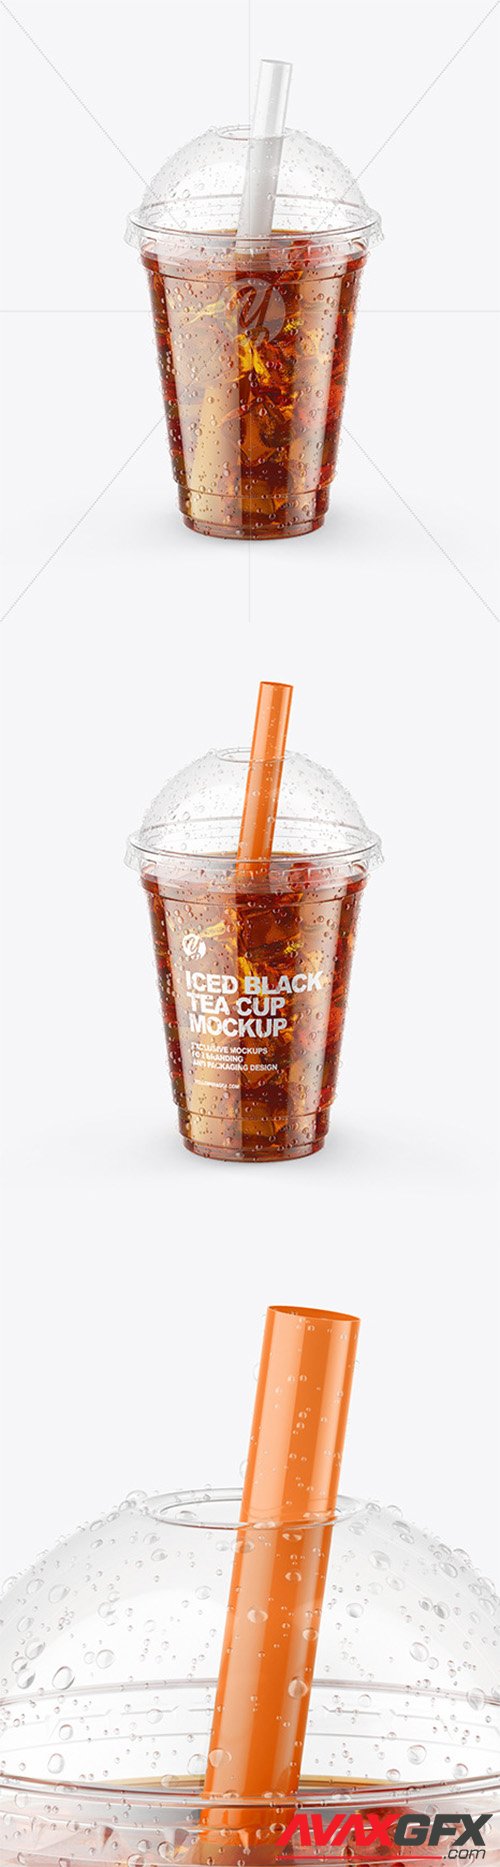 Iced Black Tea Cup Mockup 64791